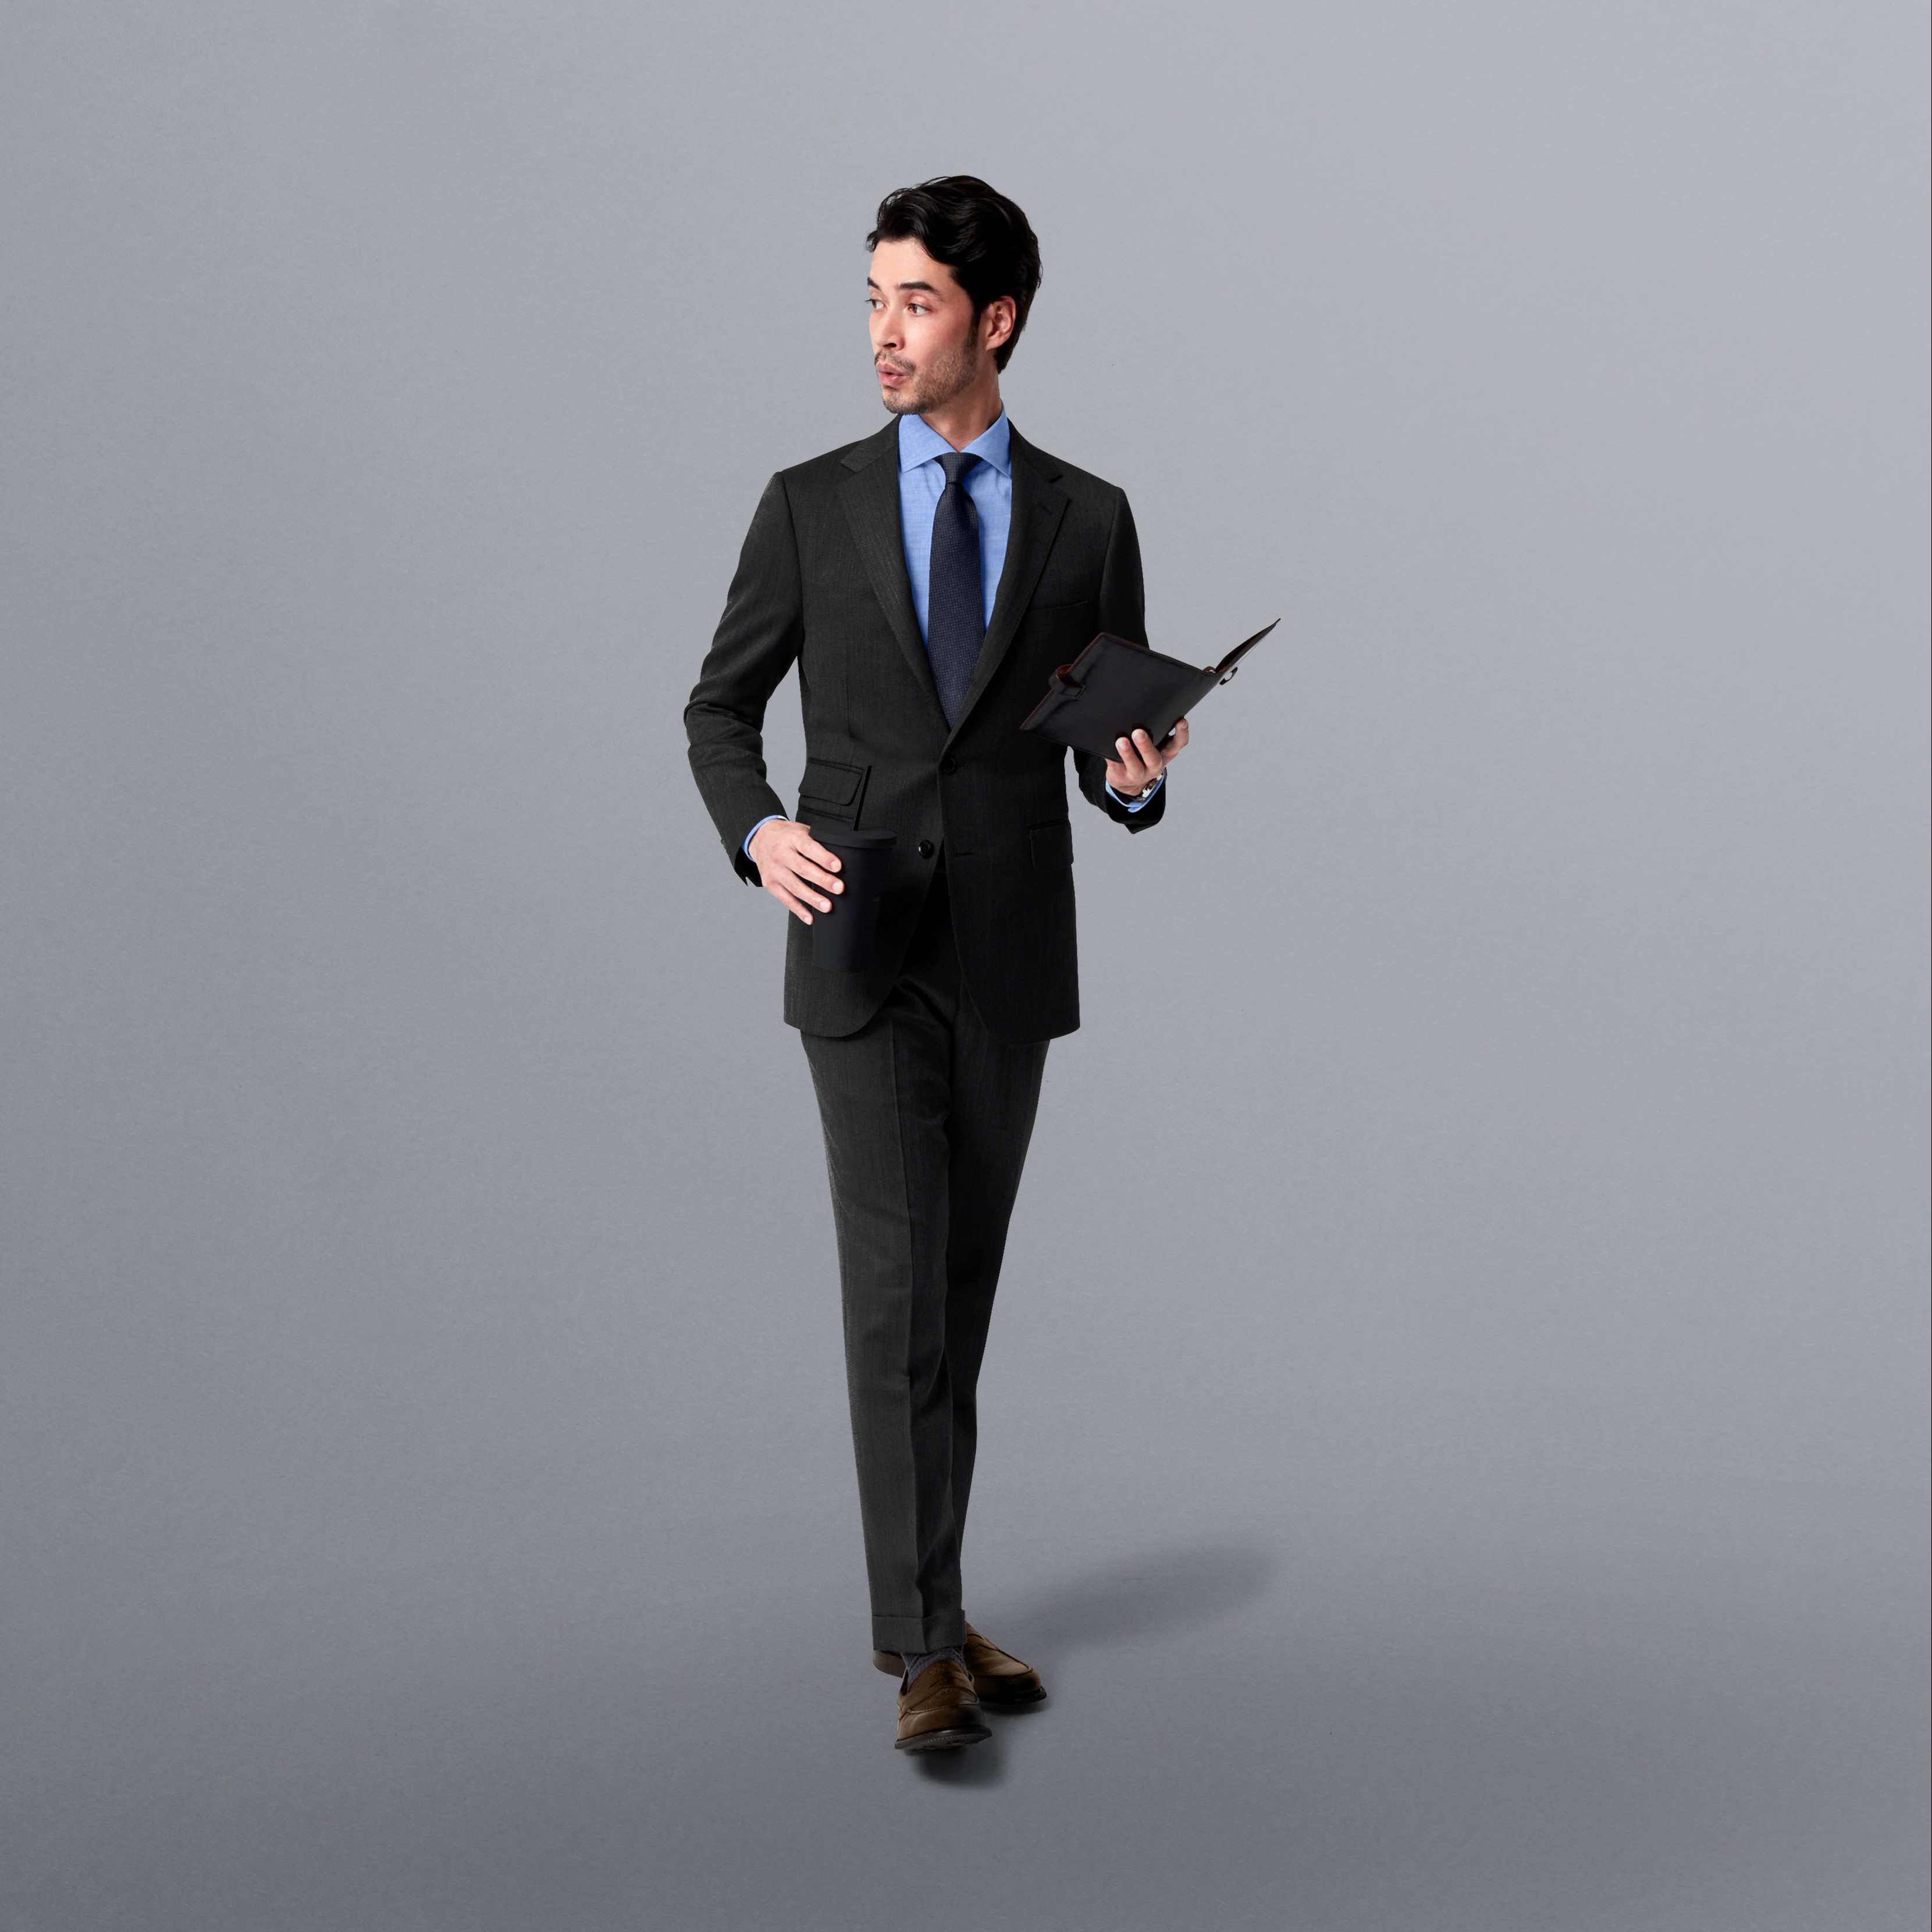 新販売店FABRIC TOKYO チャコールグレー オーダースーツ パンツ2枚 ベスト スーツ